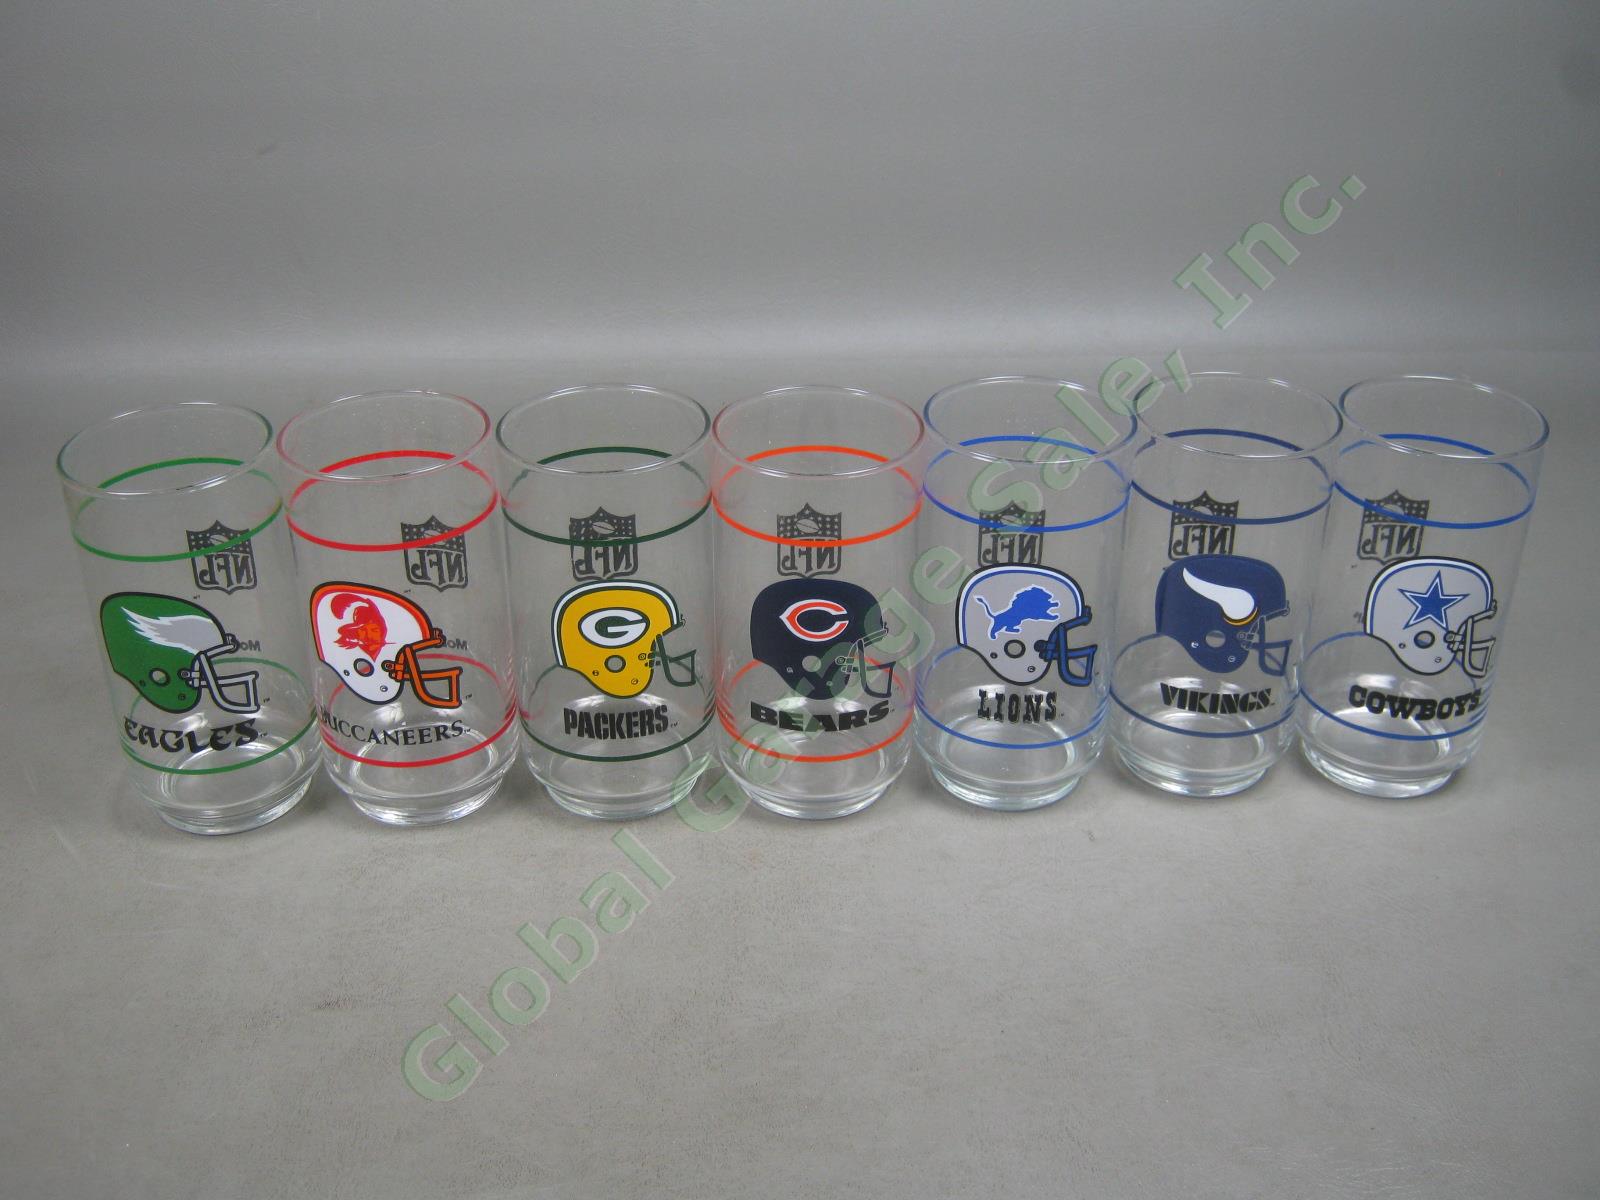 Complete Set 28 Vtg 1988 Mobil Oil NFL NFC AFC Football Promo Cooler Glasses Lot 5